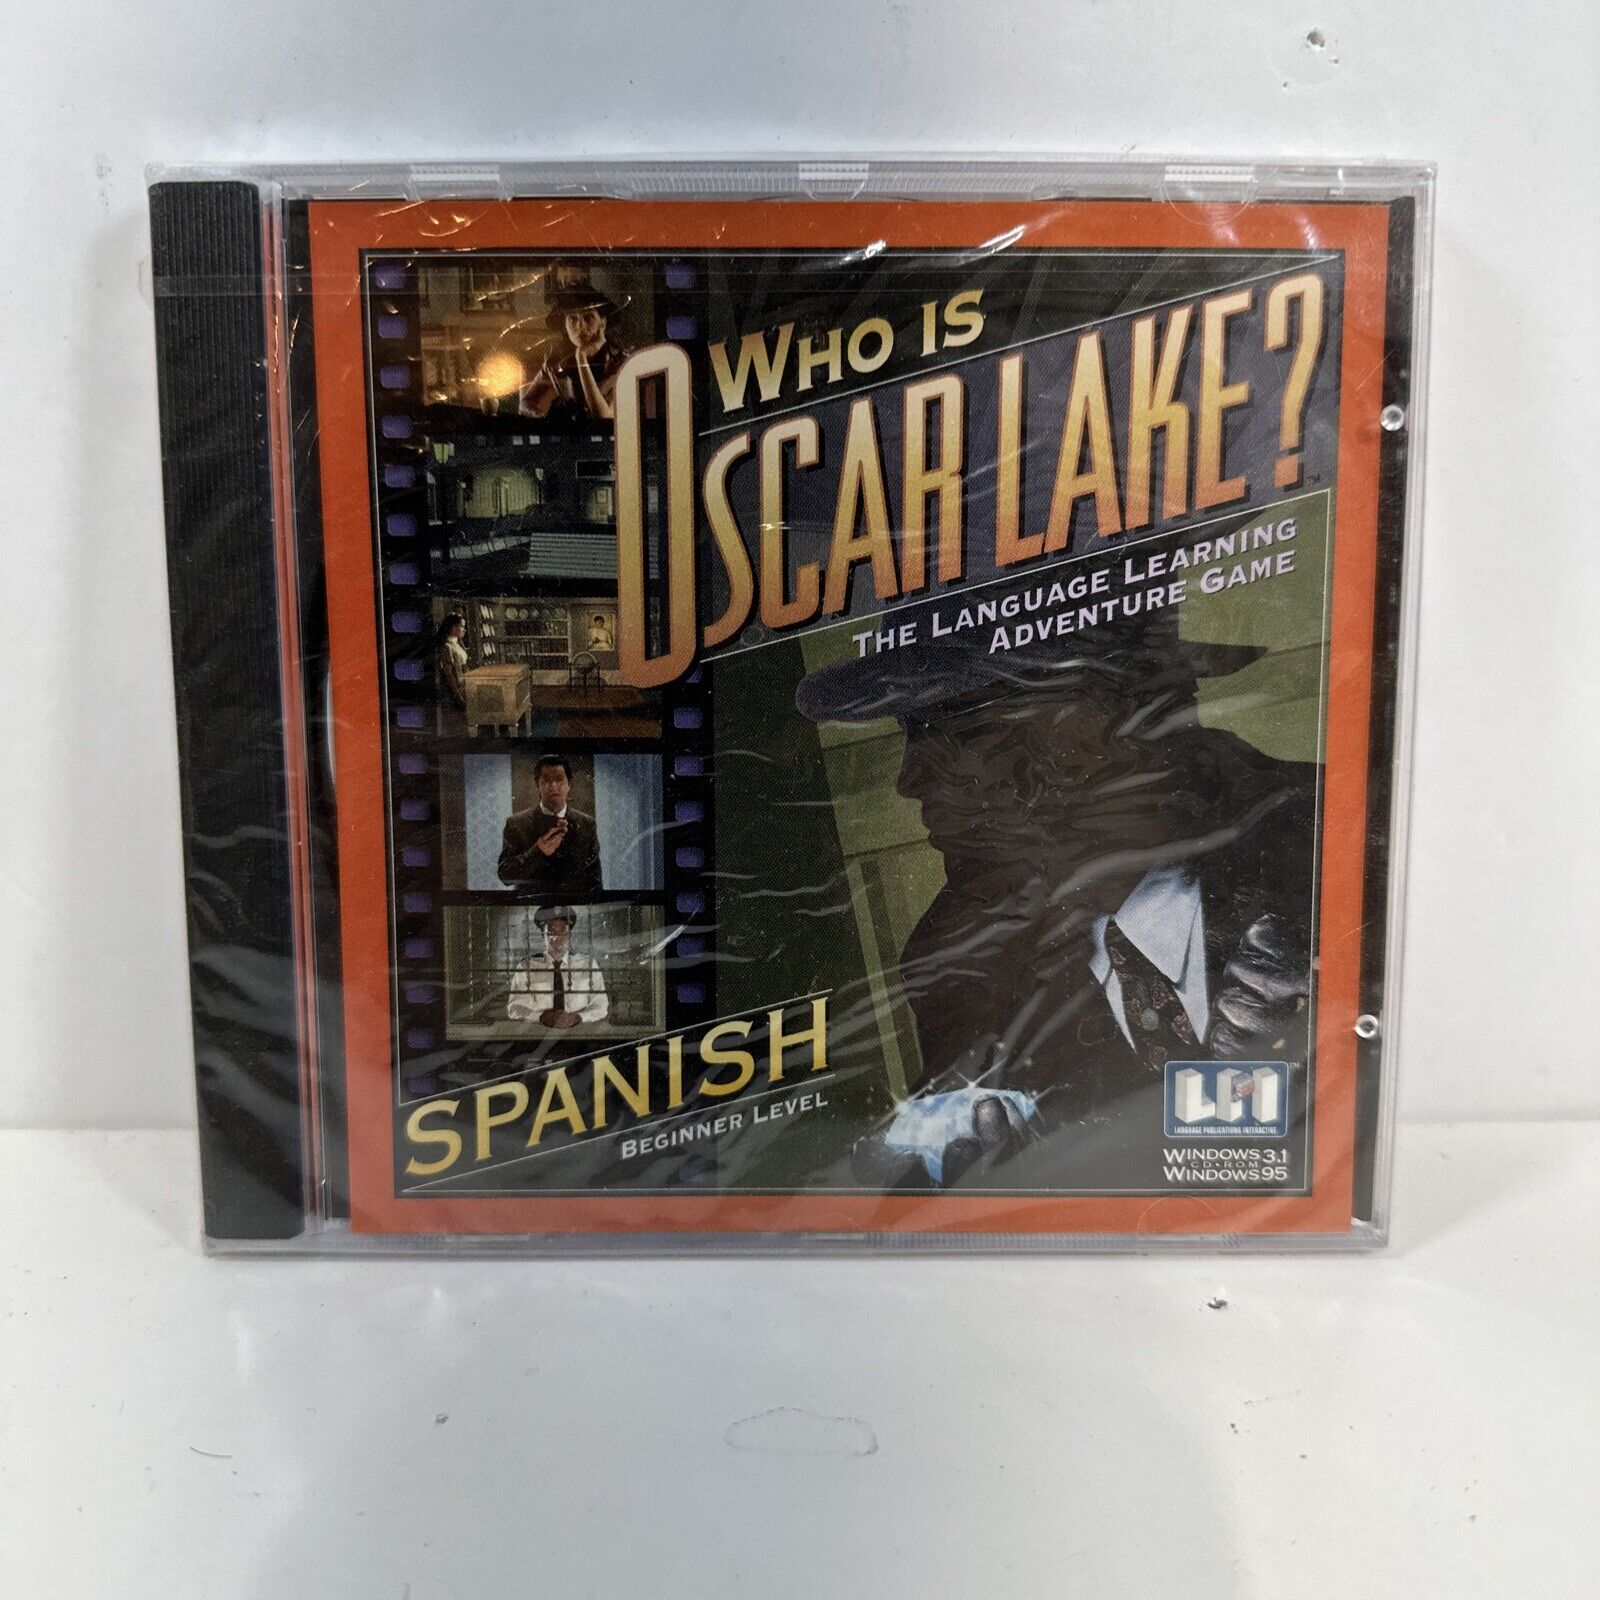 NEW SEALED WHO IS OSCAR LAKE? Spanish Language Learning Beginner Level PC CD